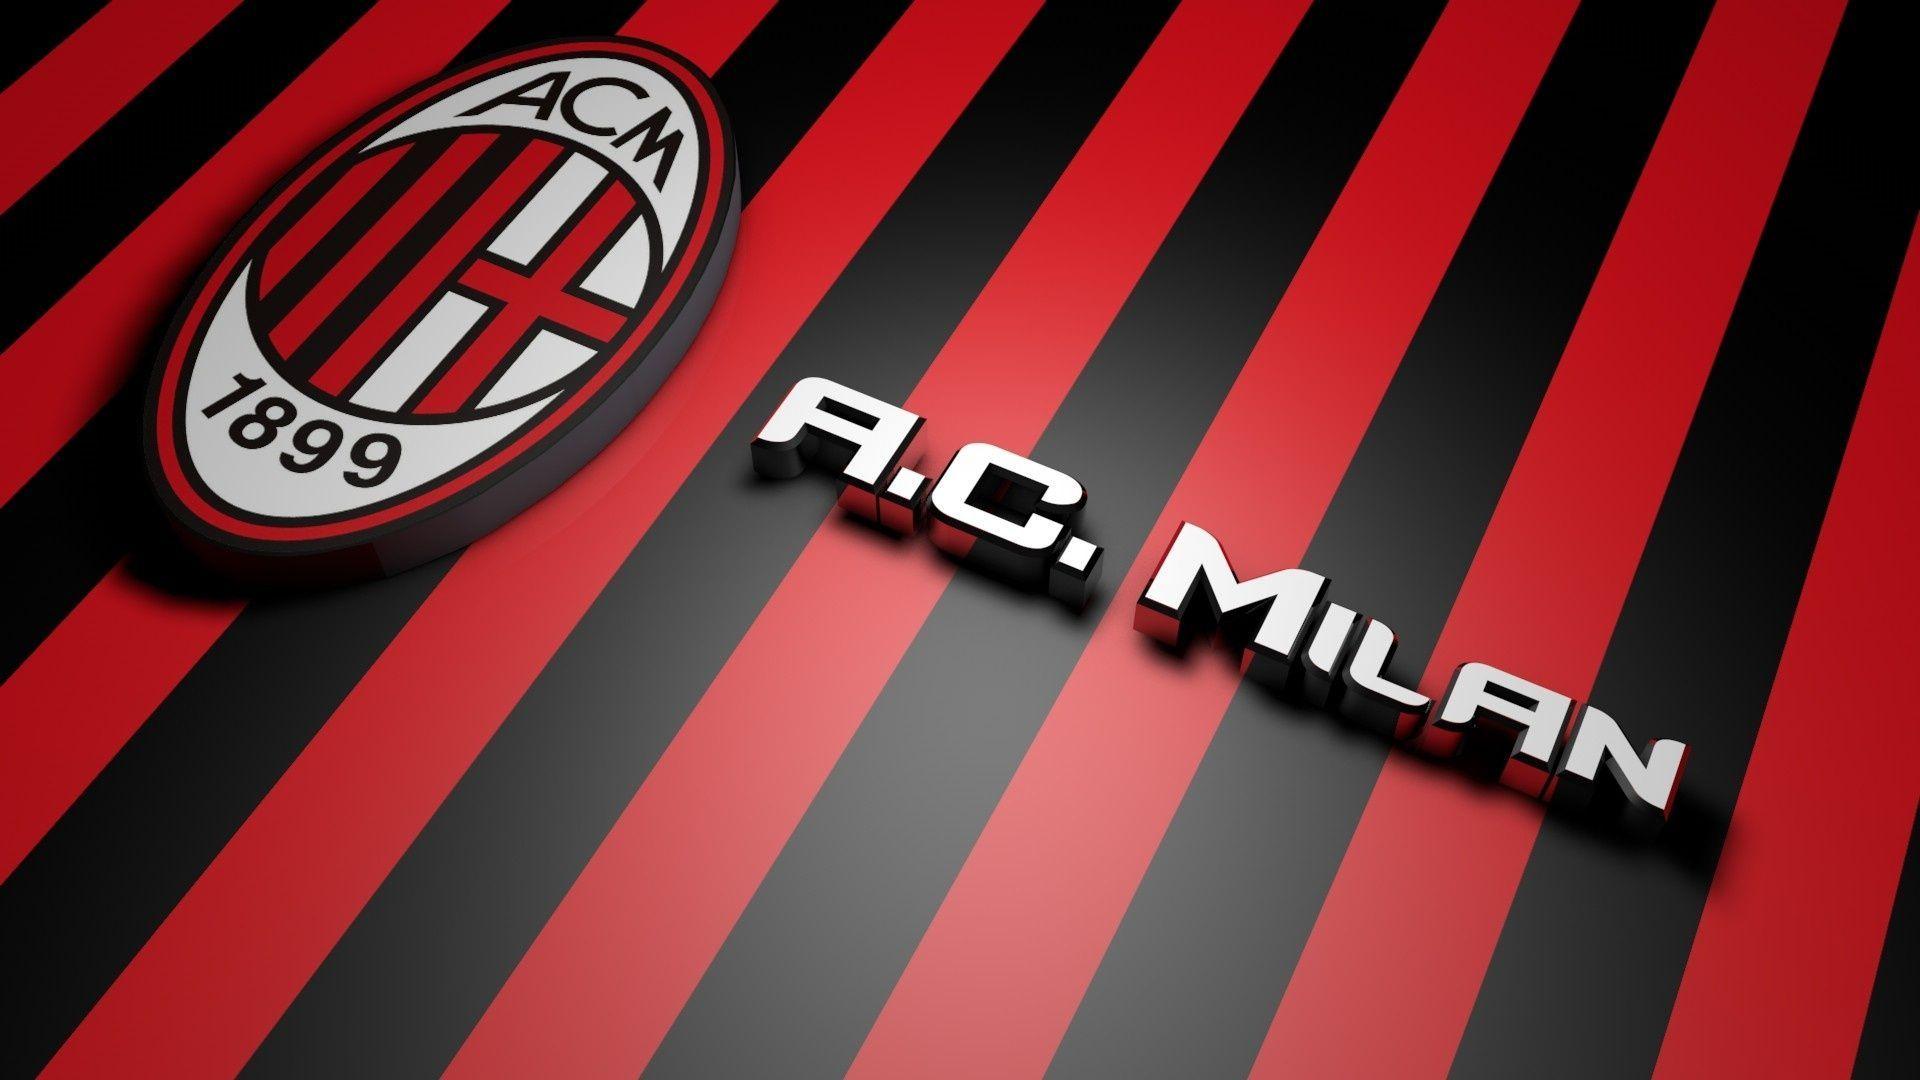 AC Milan 3D Football Logo Red and Black Background Full HD Wallpaper Widescreen. Milan wallpaper, Milan football, Ac milan